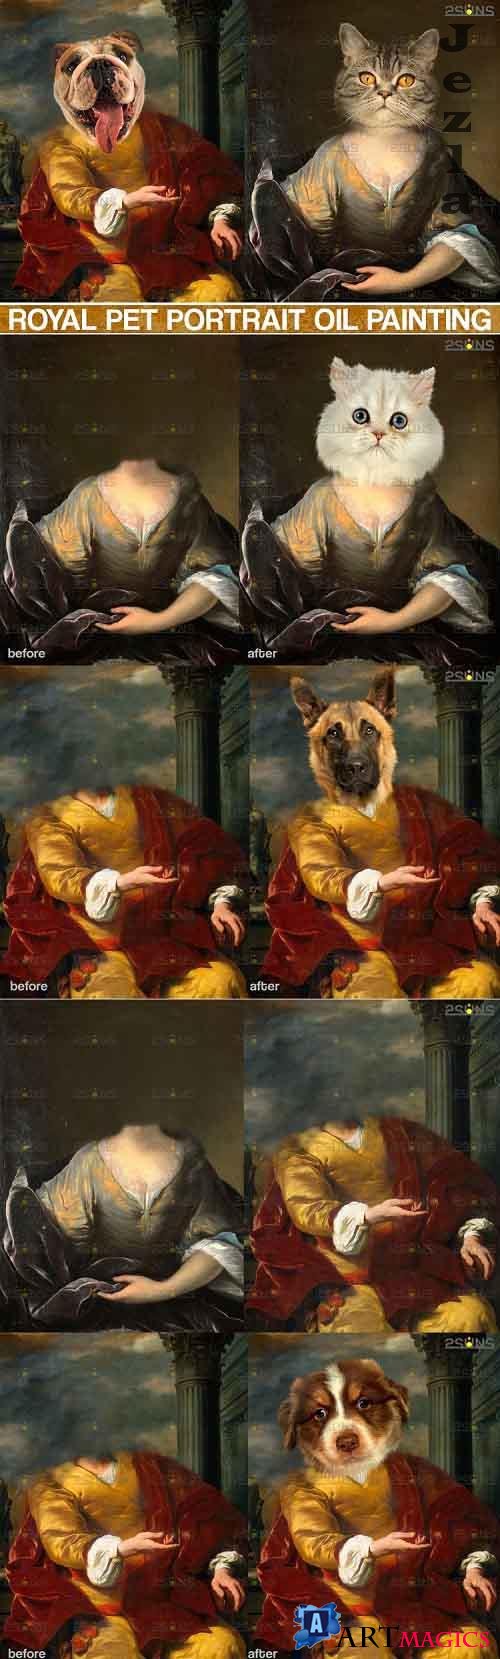 Royal Pet Portrait templates, Pet Painting Oil Photoshop v.3  - 617027